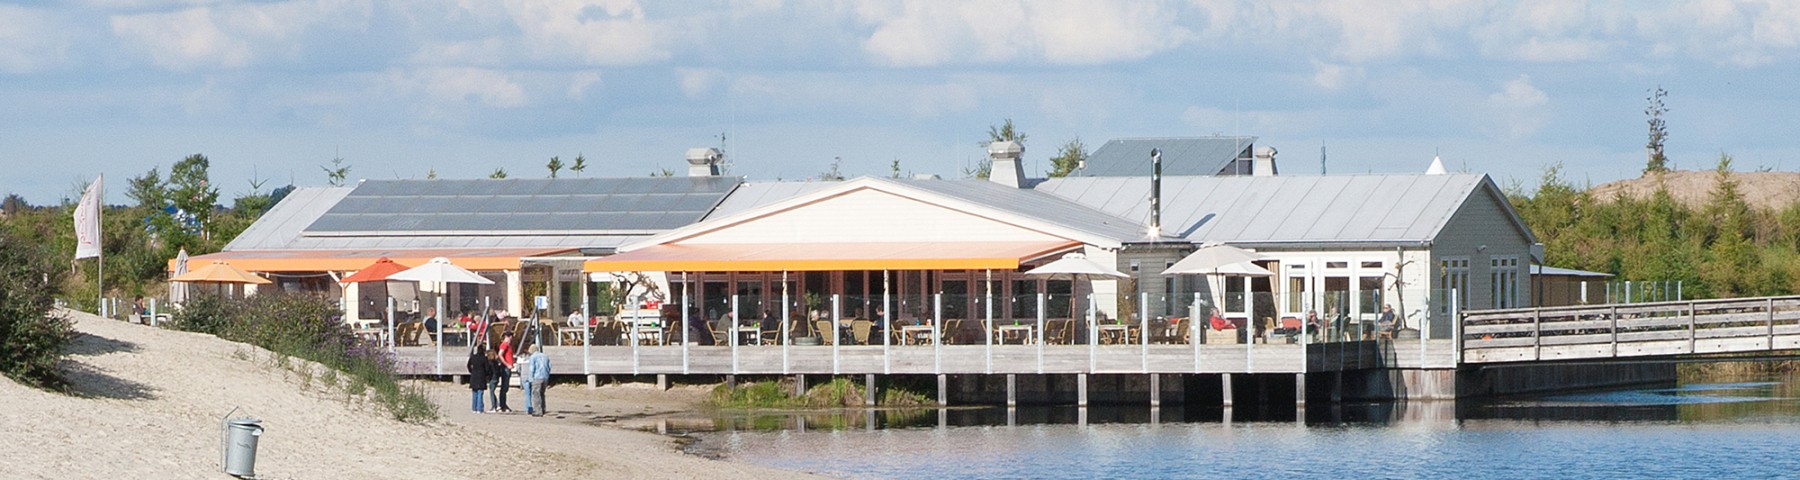 Paviljoen Restaurant Netl.jpg